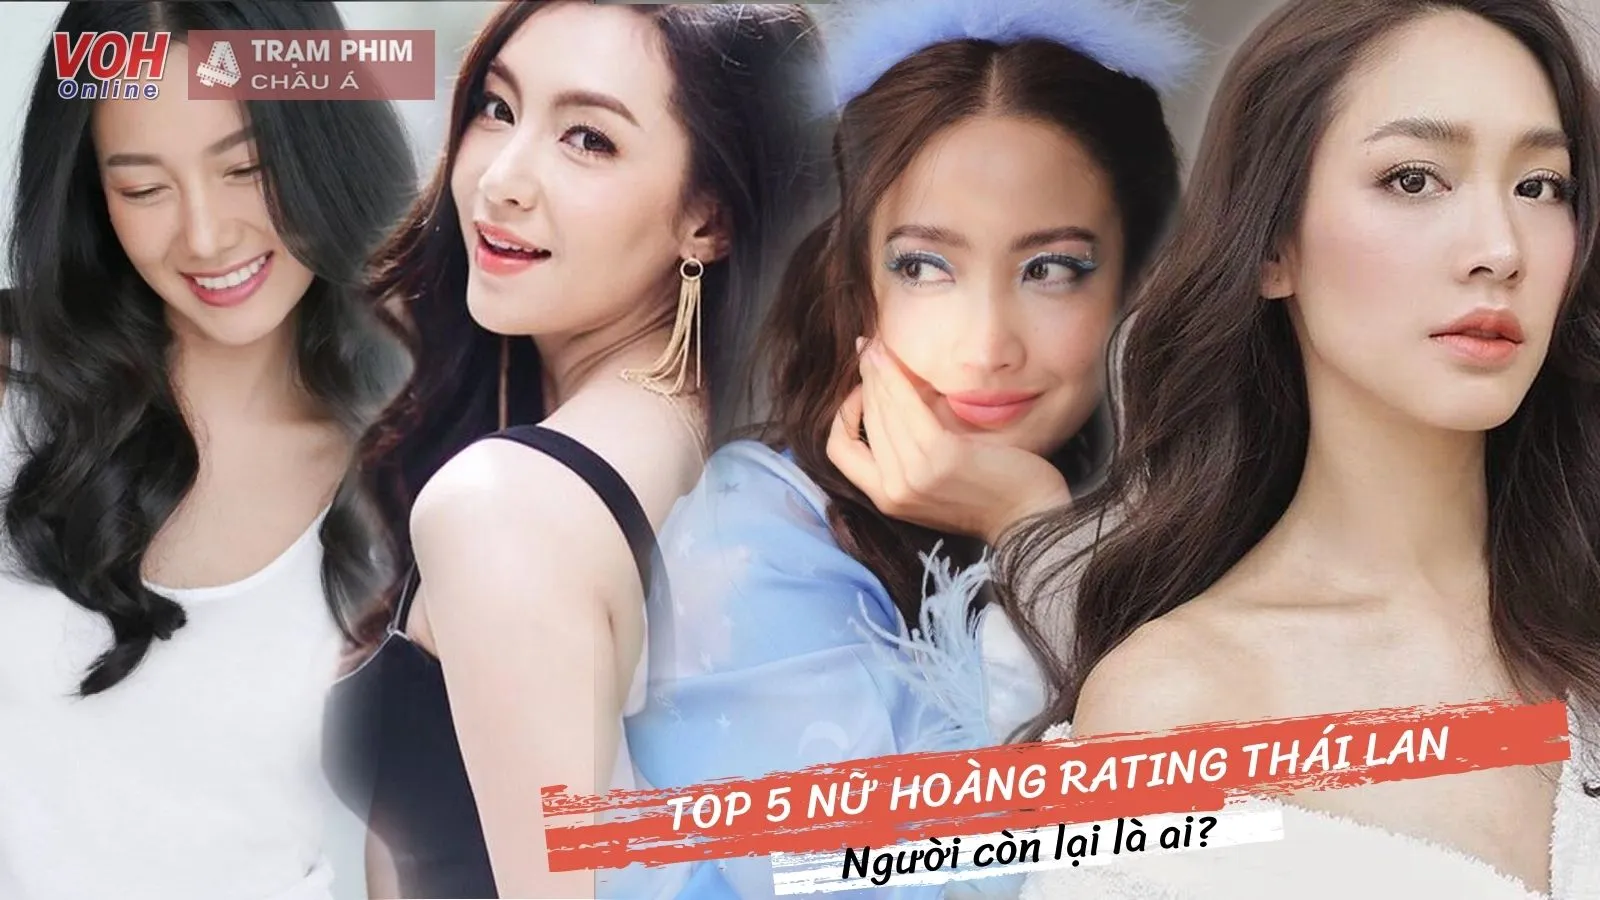 Top 5 nữ diễn viên Thái Lan được yêu thích nhất bao gồm những ai?